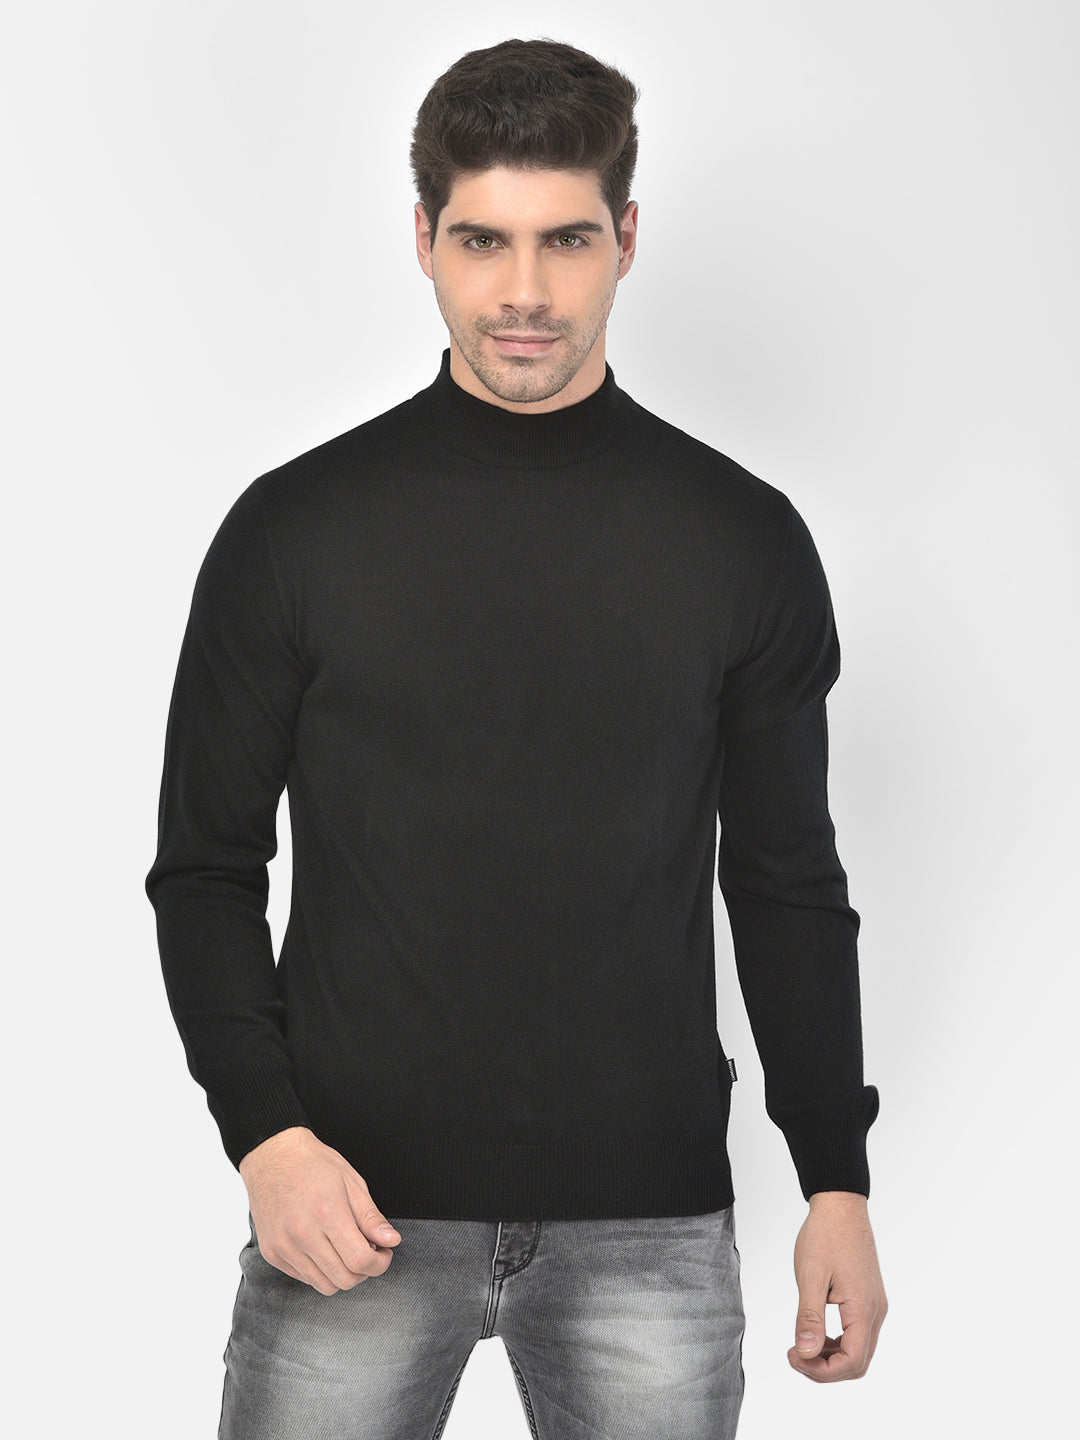 Black Mock Neck Sweater - Men Sweaters